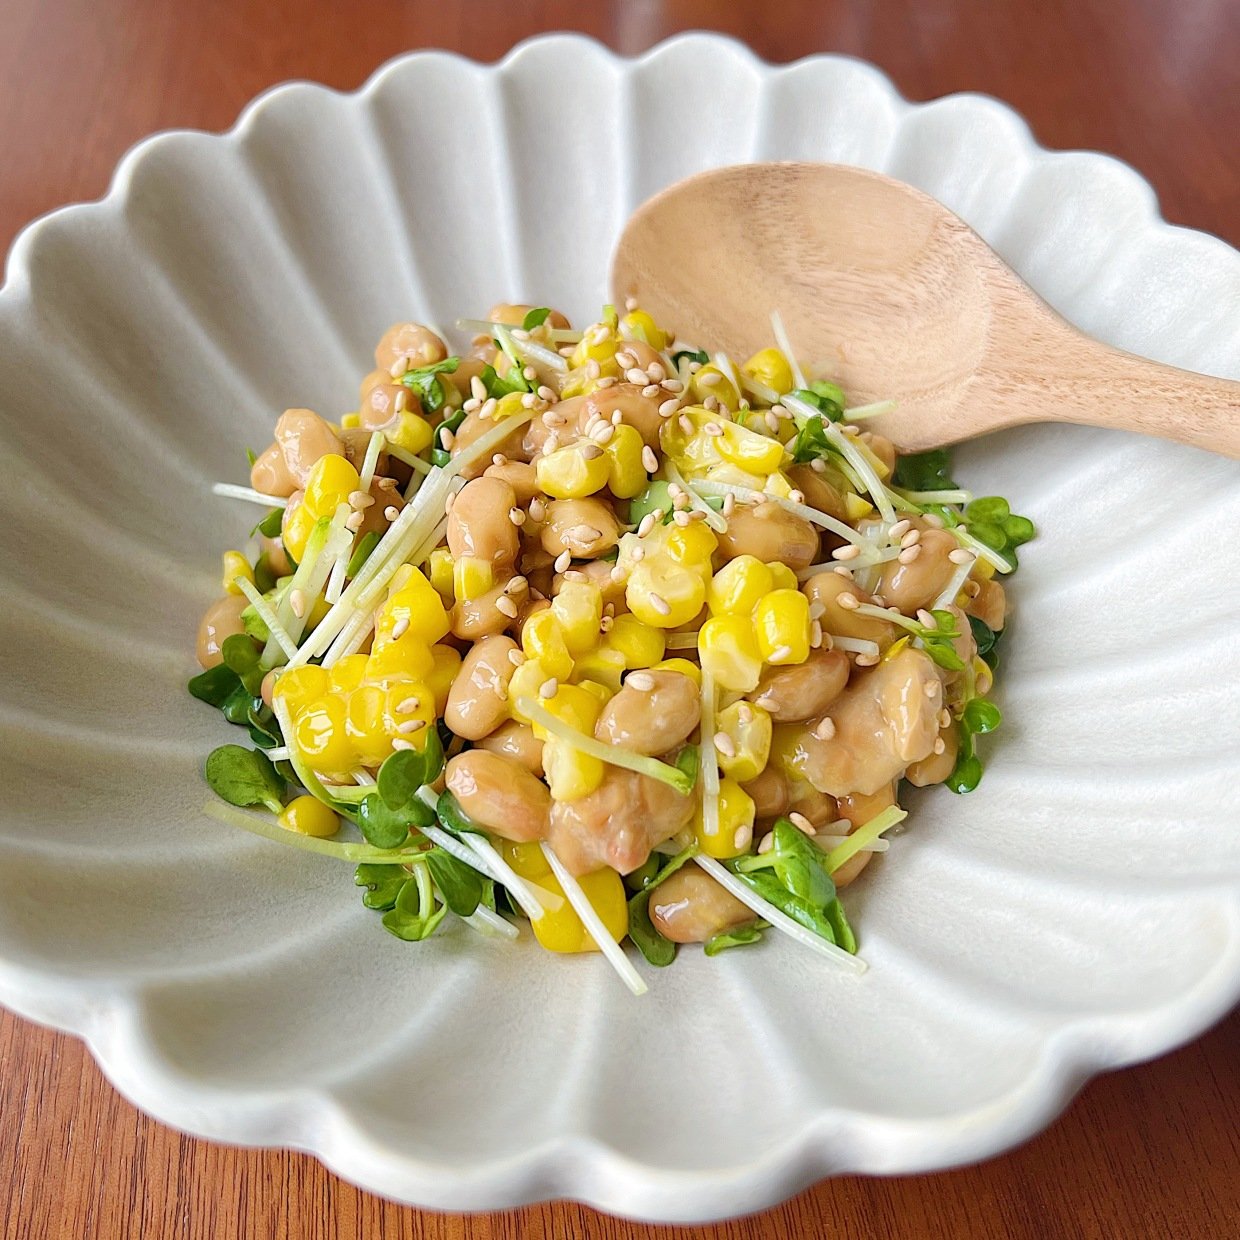 「納豆」にいれると腸がよろこぶ“疲れた日に食べたい栄養素が詰まった夏野菜”とは？